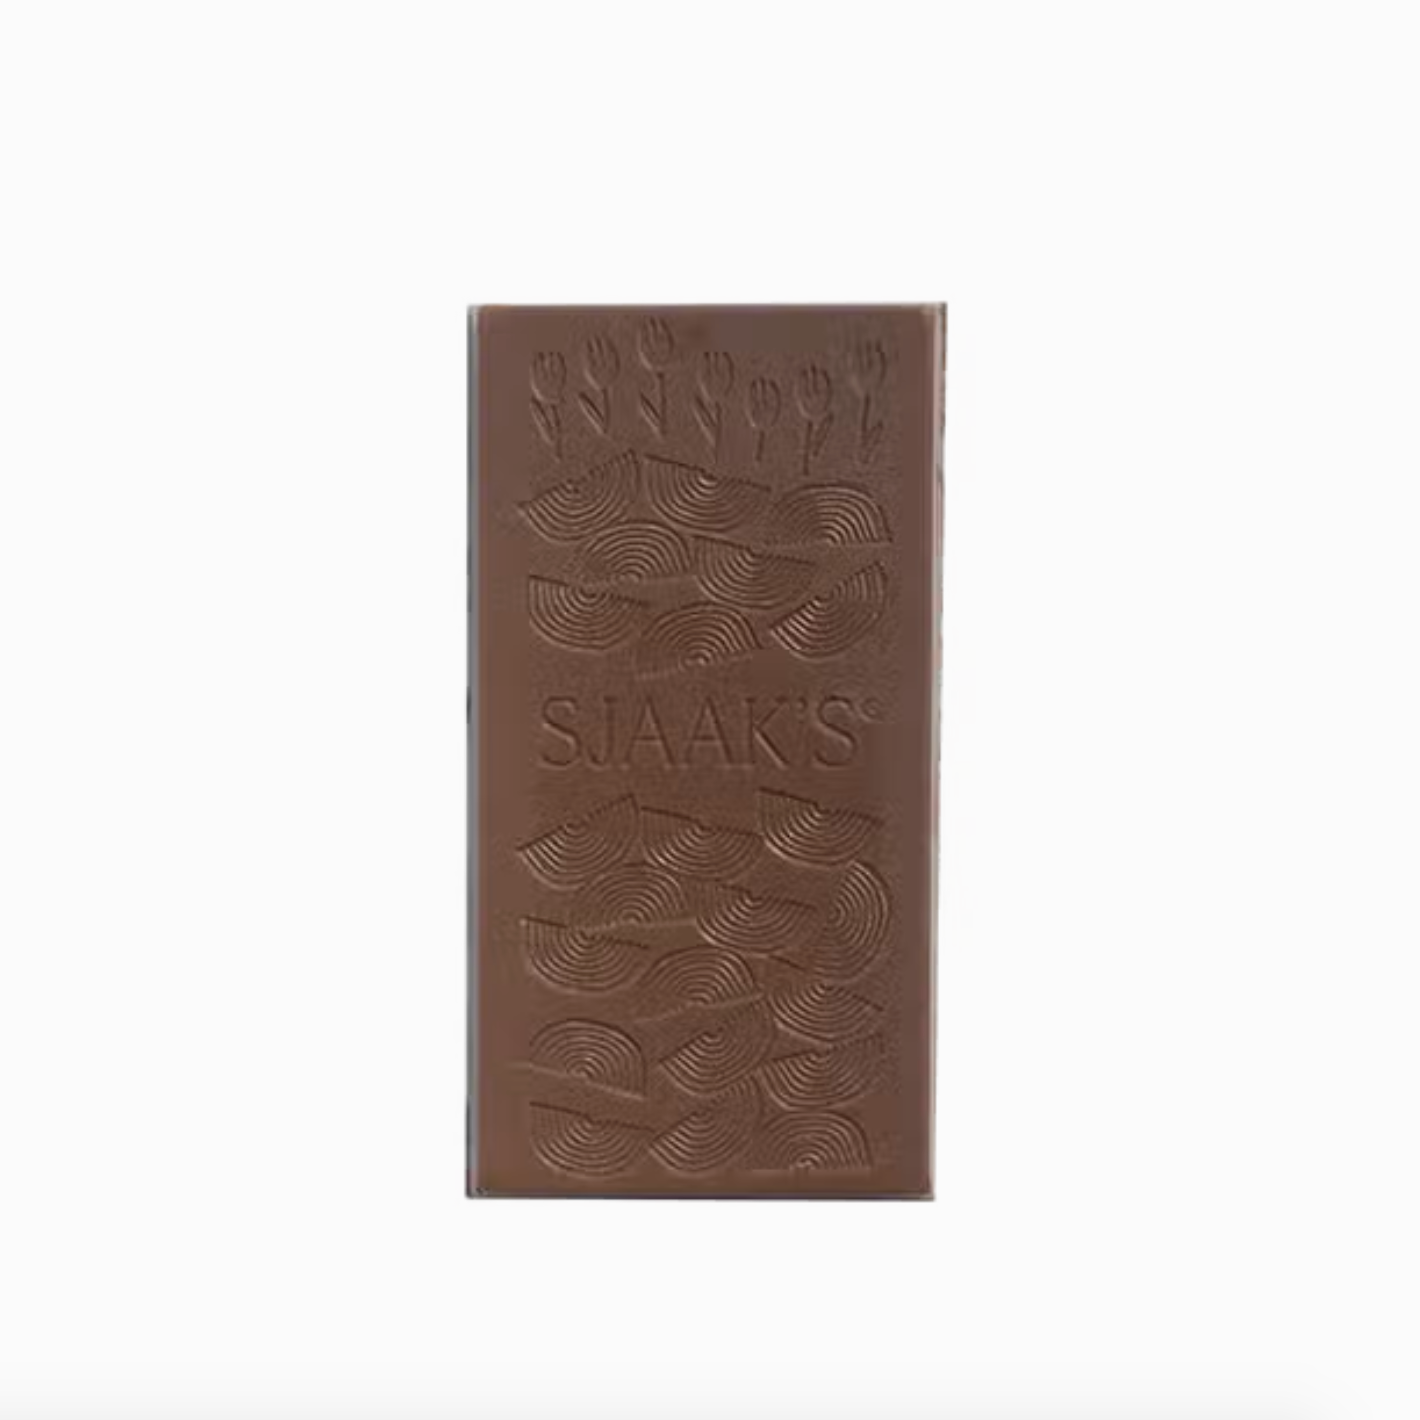 Roasted Almond Melk® Chocolate Humboldt Bar